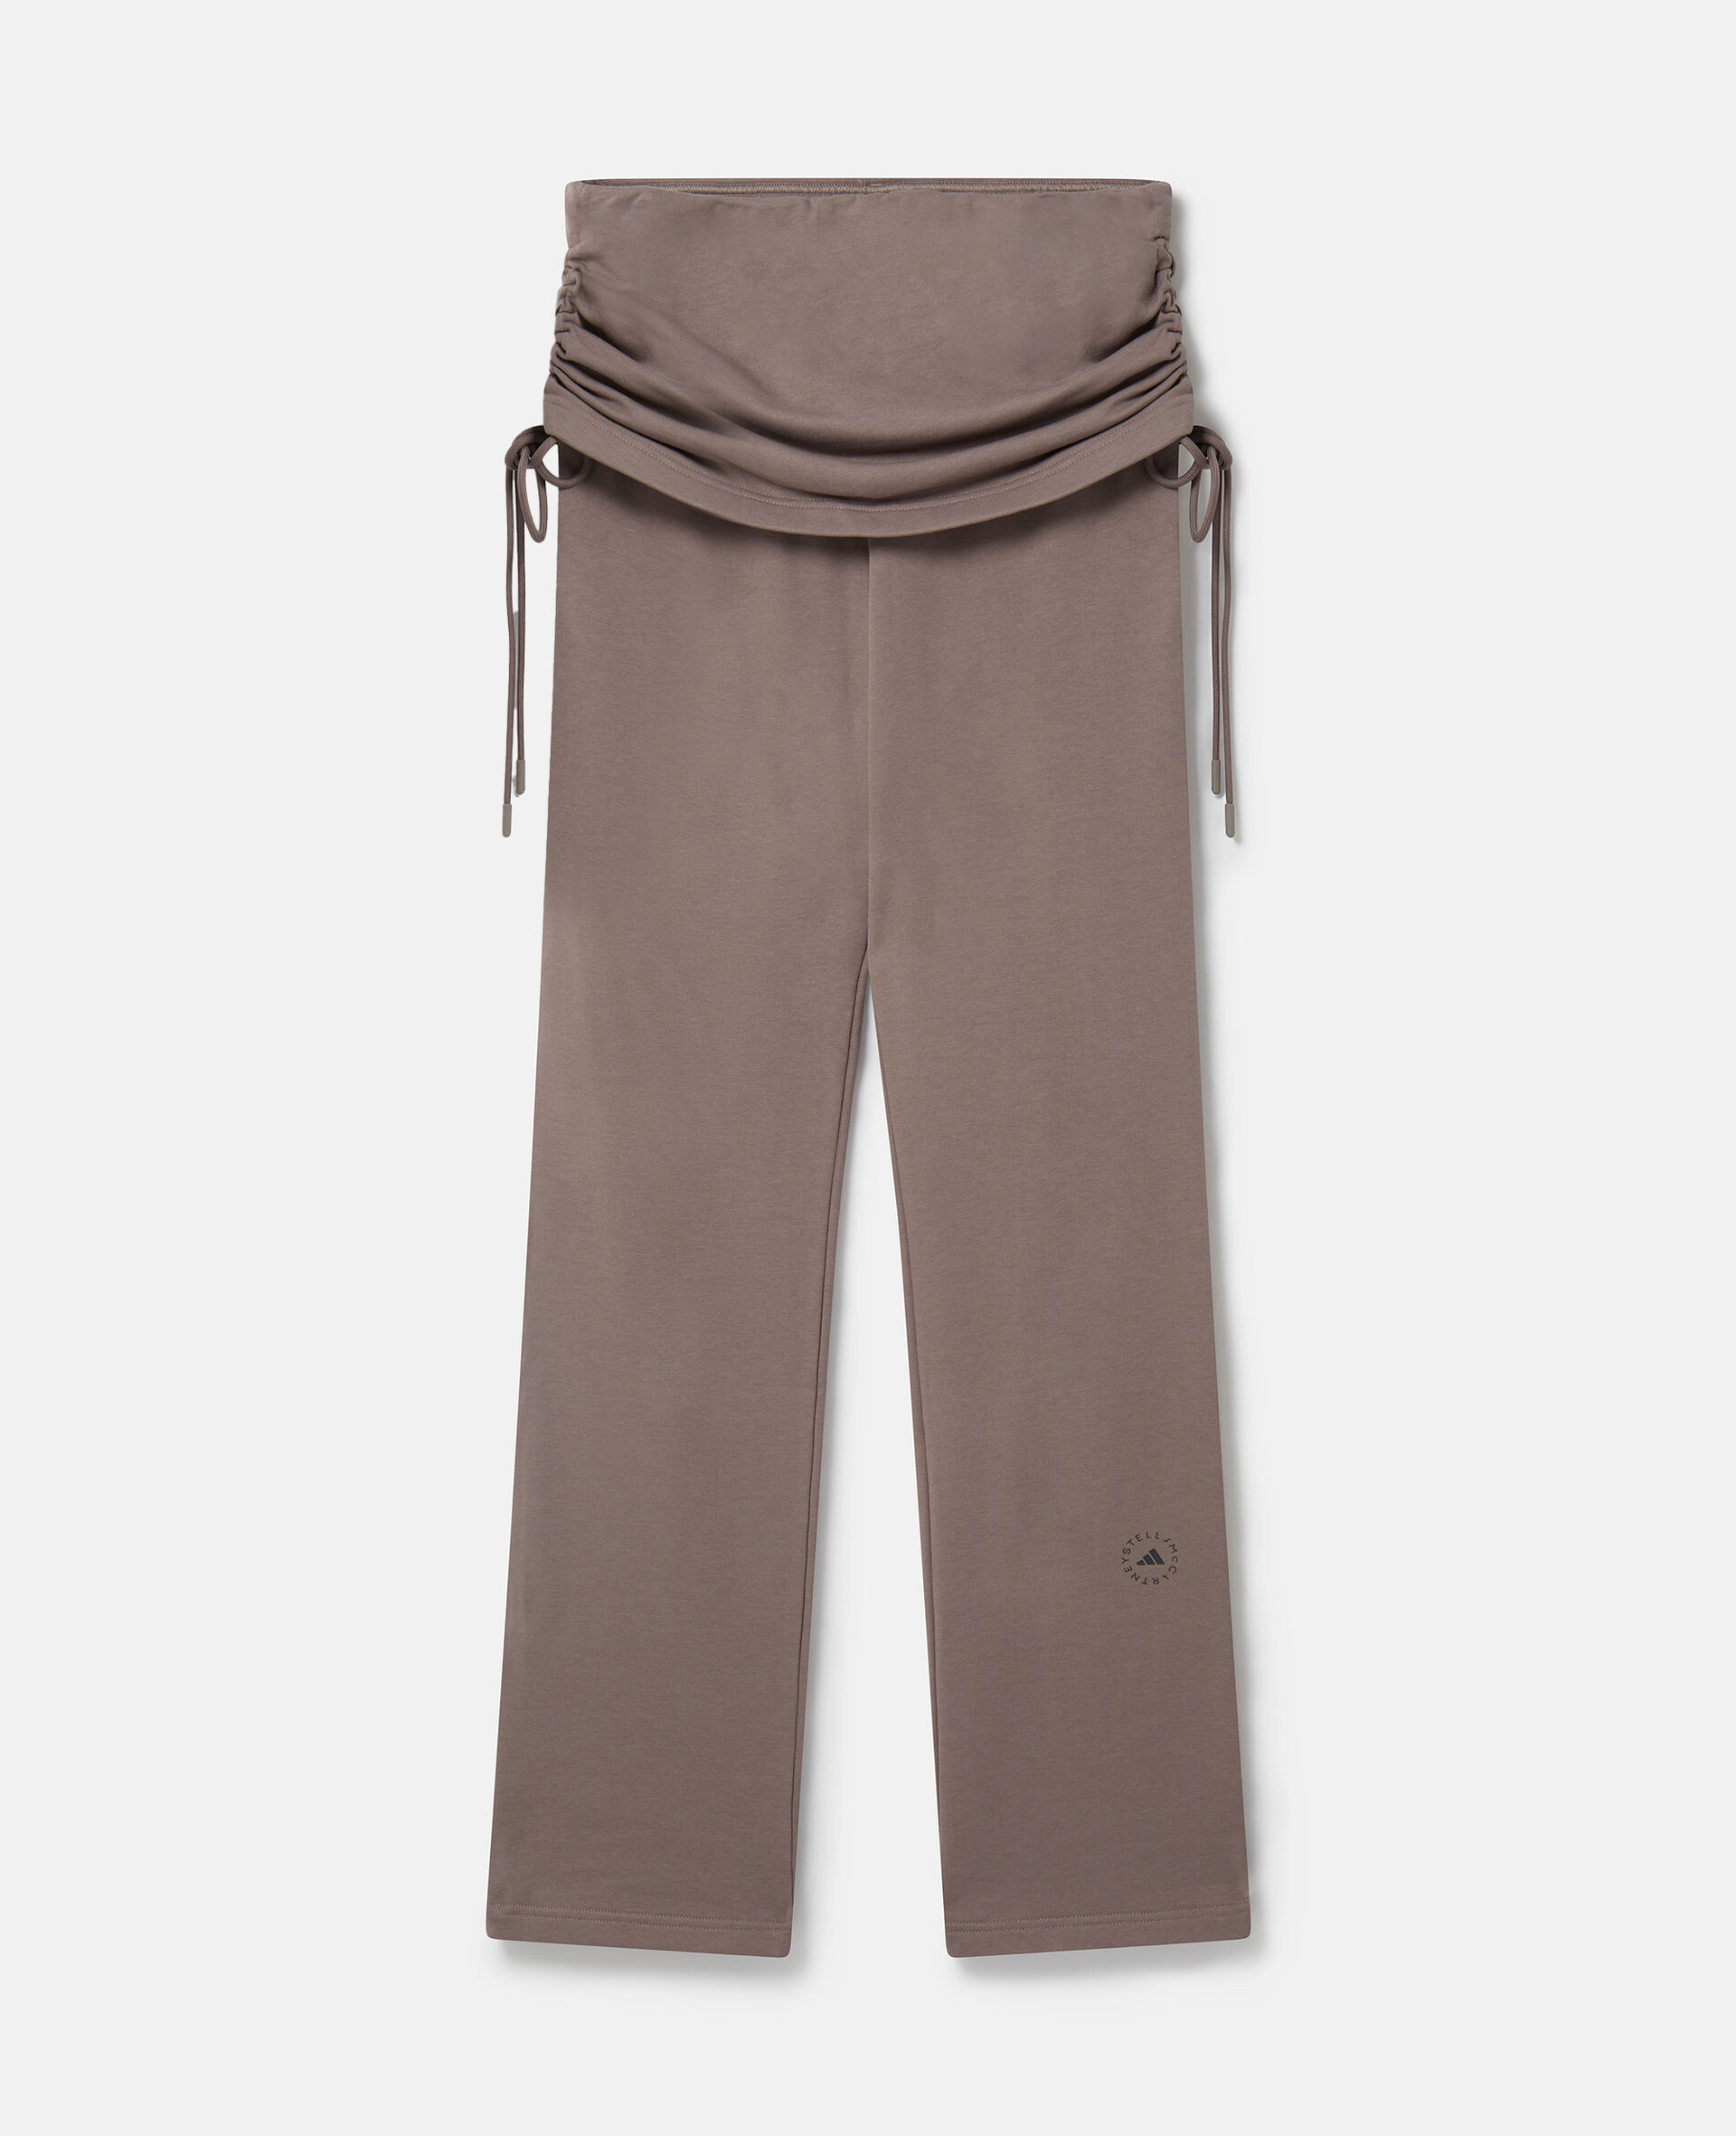 Pantaloni TrueCasuals con risvolto-Marrone-medium